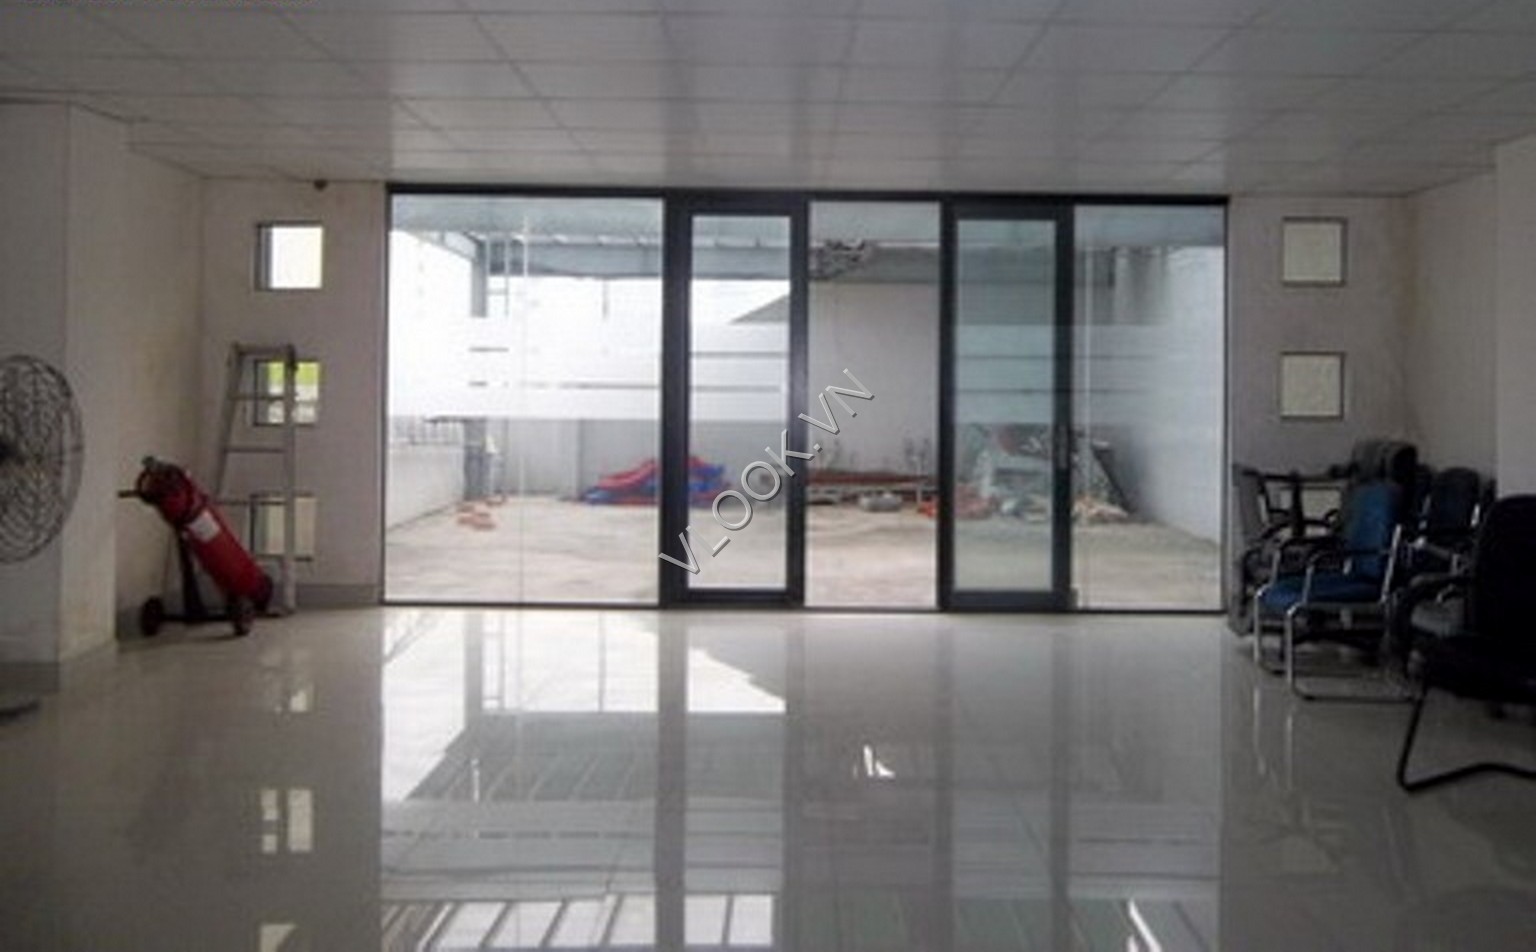 VLOOK.VN - Văn phòng cho thuê quận Bình Thạnh - DMC BUILDING